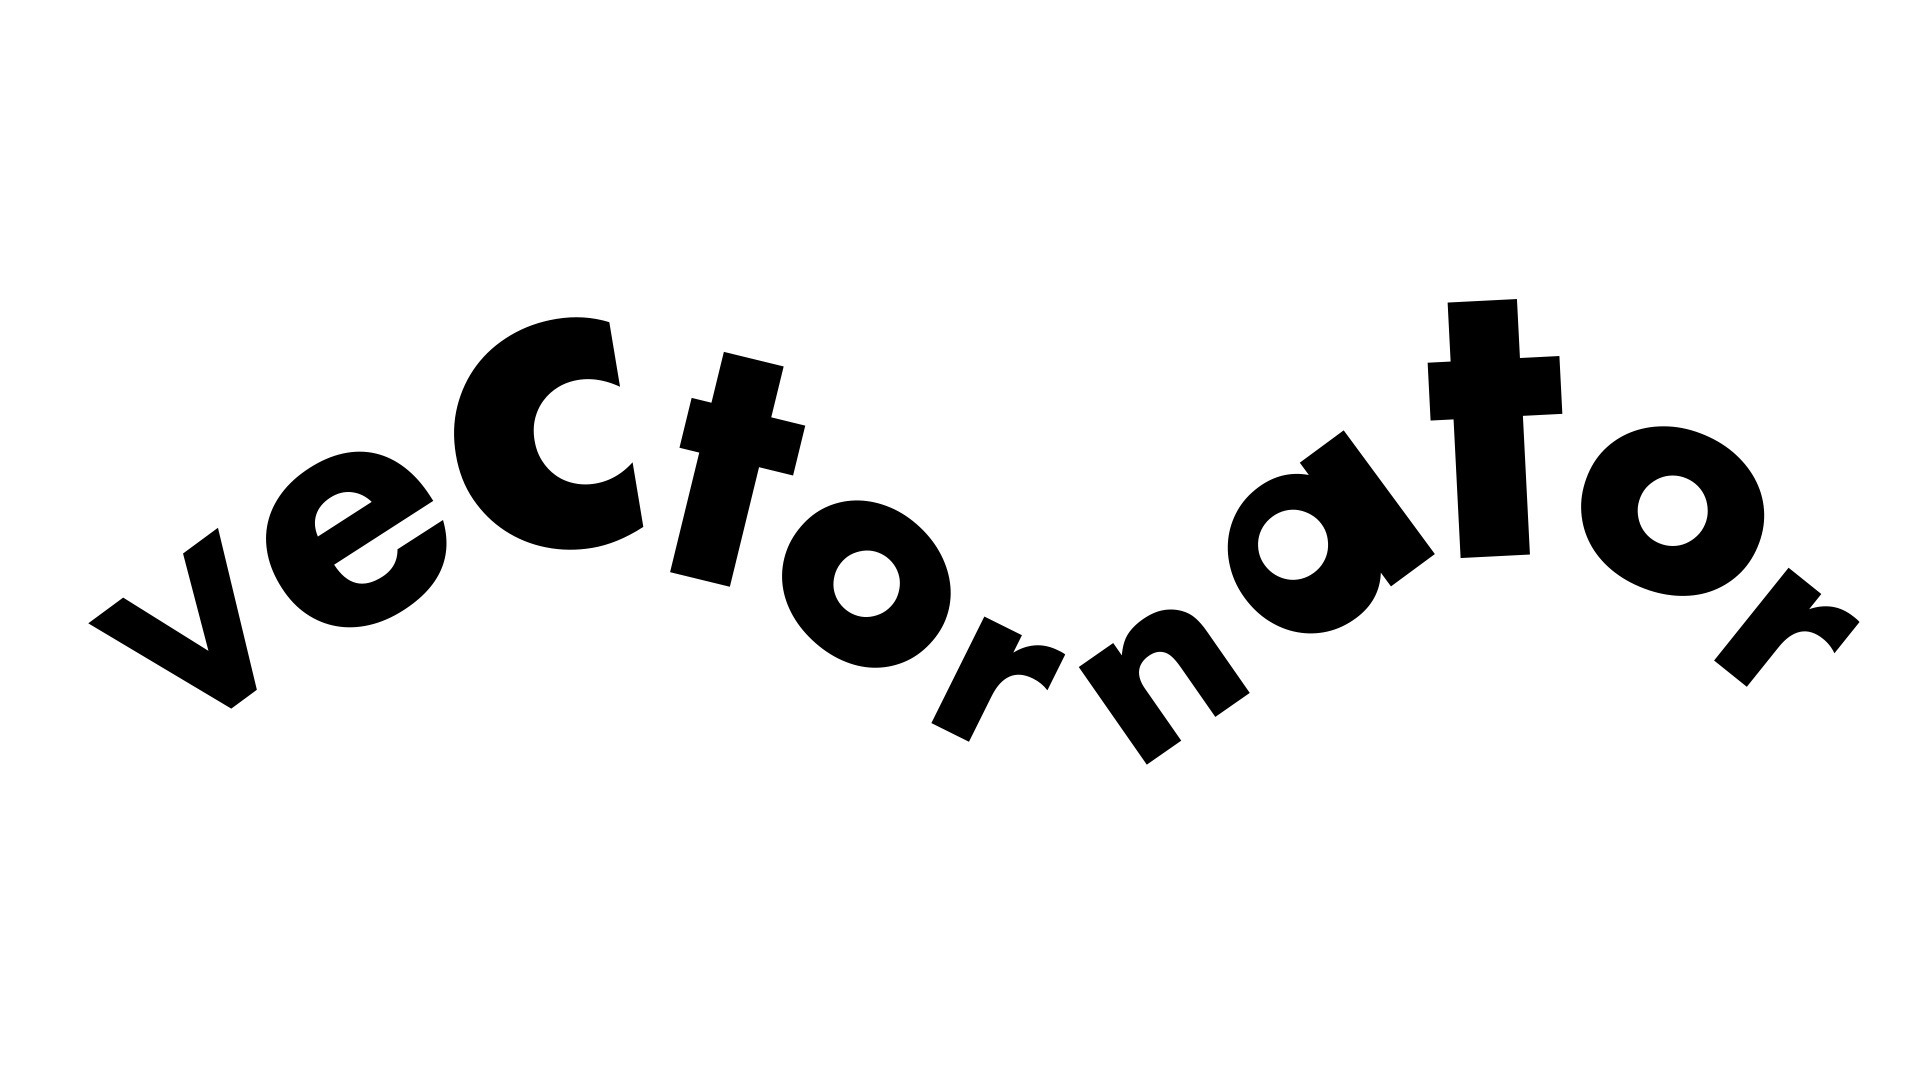 Vectornaotrで波打つように変形したデザインの文字を描く方法